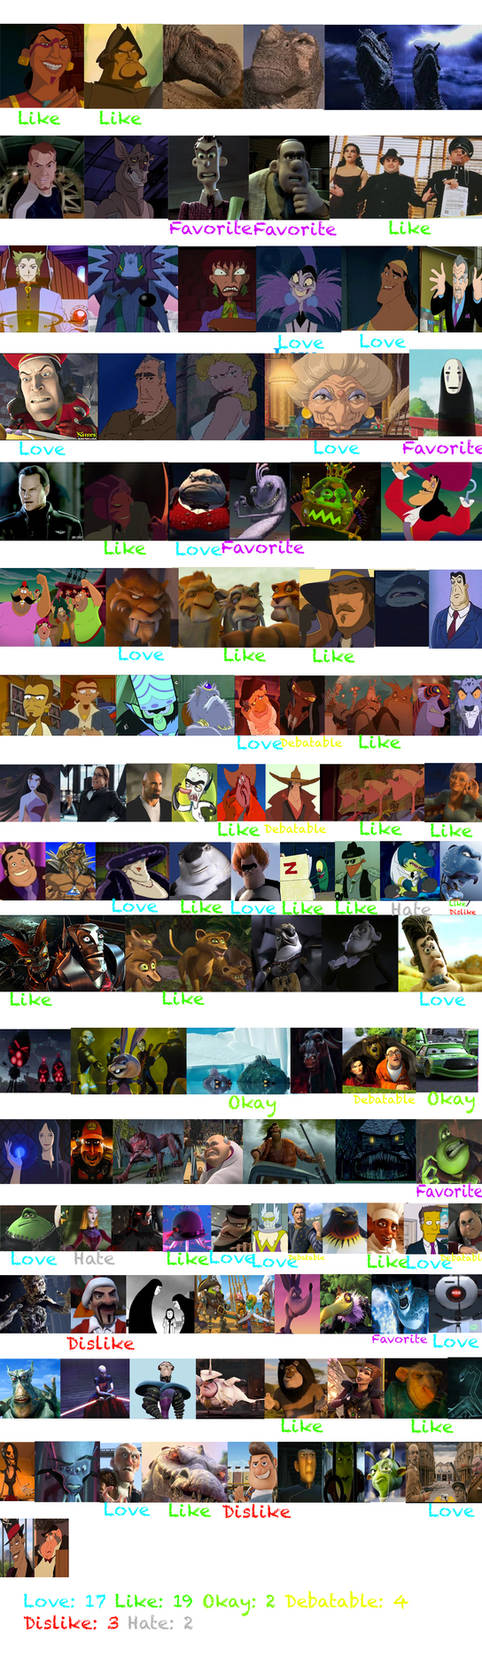 Animated Movie Villains 2000s Scorecard by thearist2013 on DeviantArt